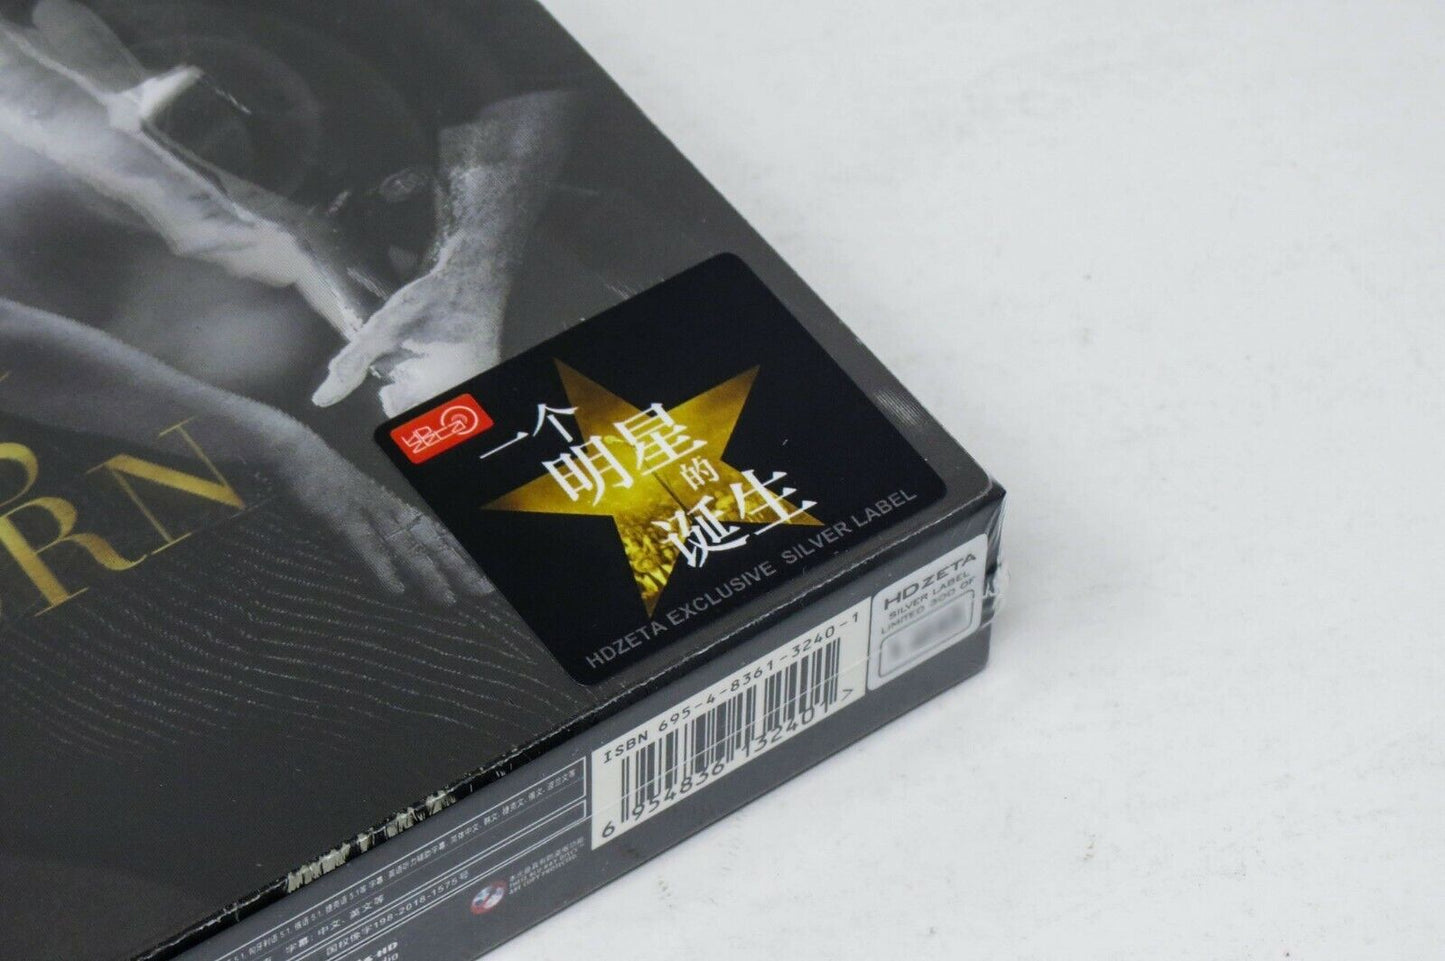 A Star is Born Blu-ray SteelBook HDZeta Silver Label Box Set